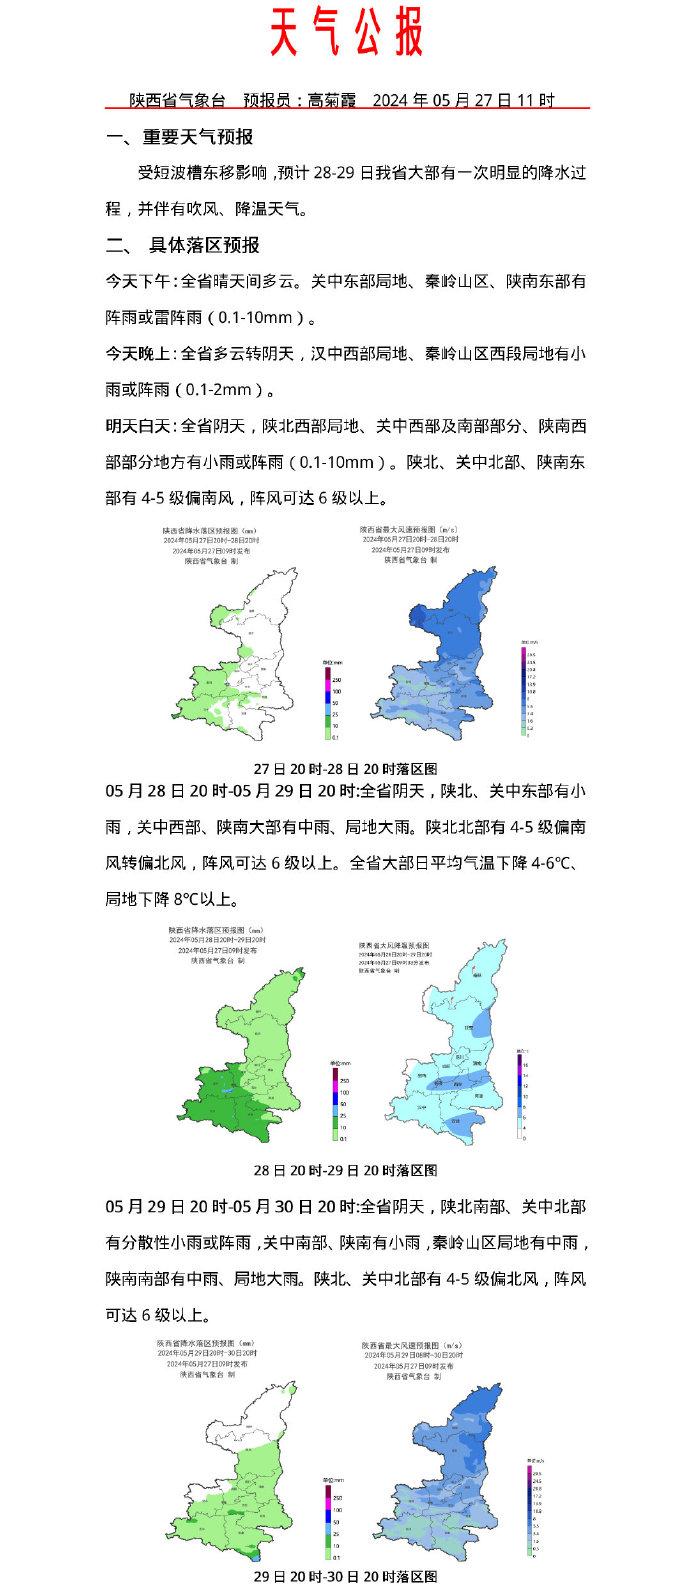 28-29日陕西省大部将迎来降水过程 伴有吹风降温天气